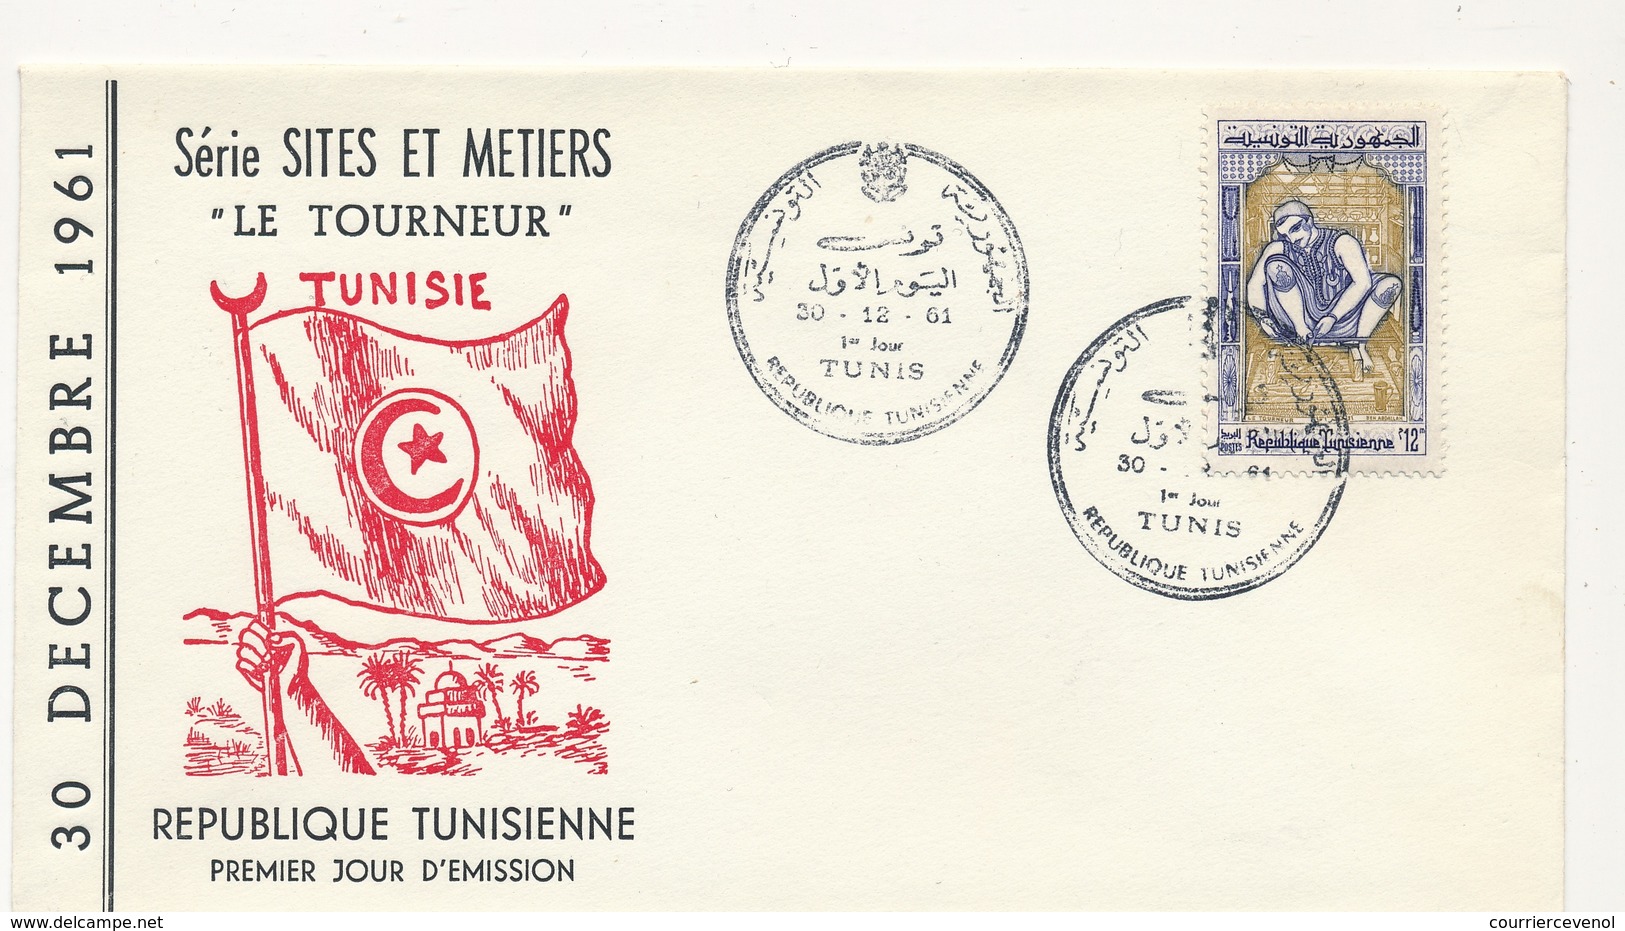 TUNISIE - Enveloppe FDC - Le Tourneur - TUNIS 1961 - Tunisia